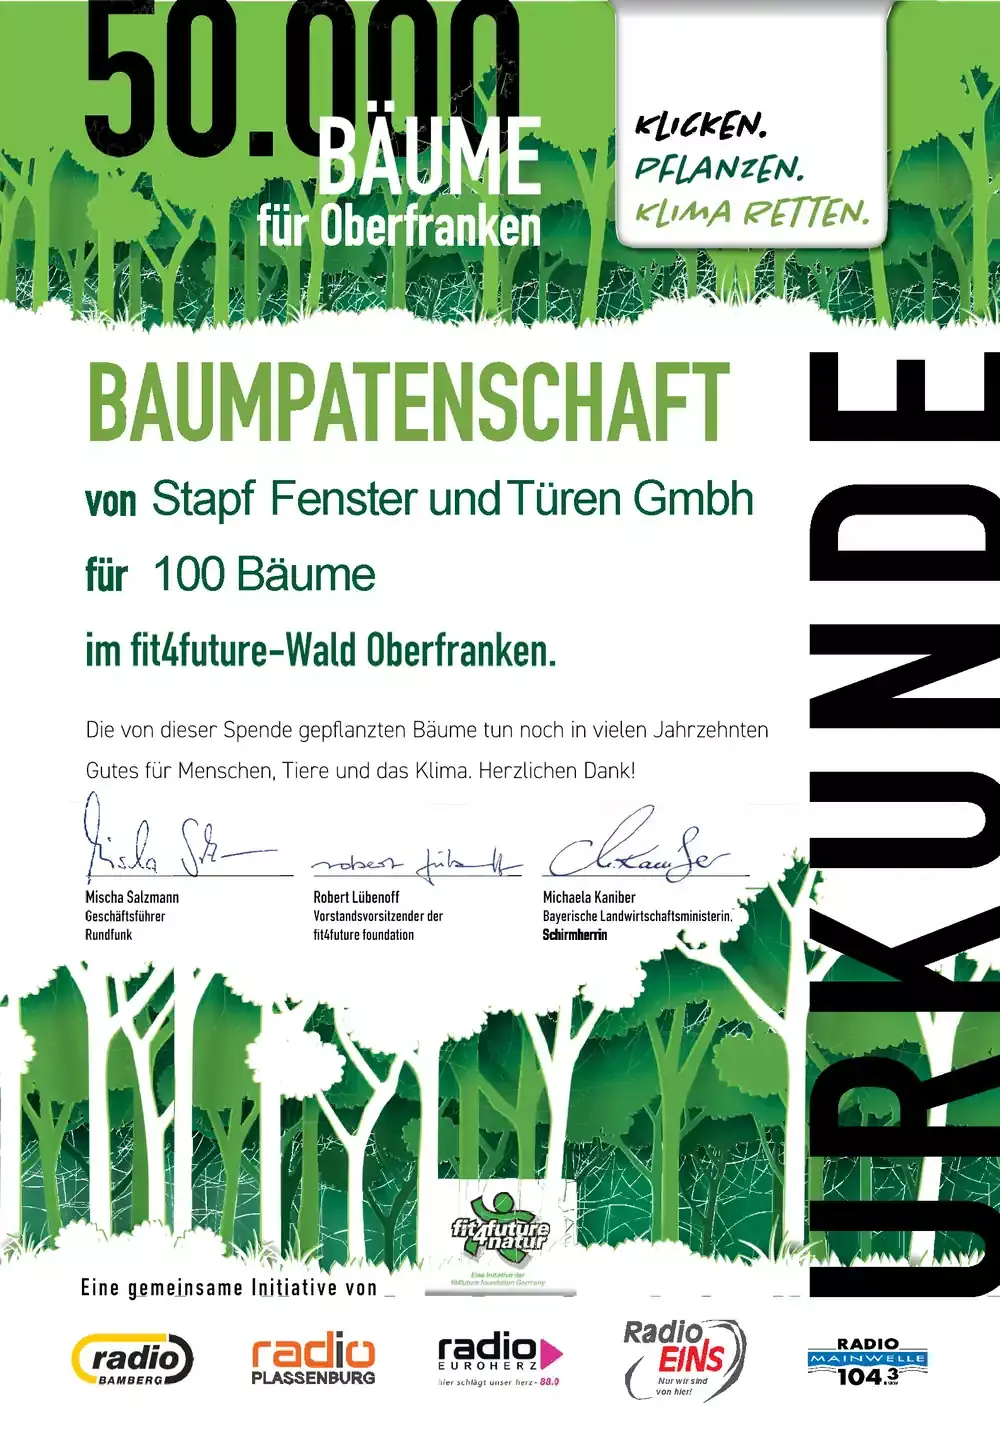 BAUMPATENSCHAFT - fit4future Wald Oberfranken -VON STAPF FENSTER & TÜREN GmbH 